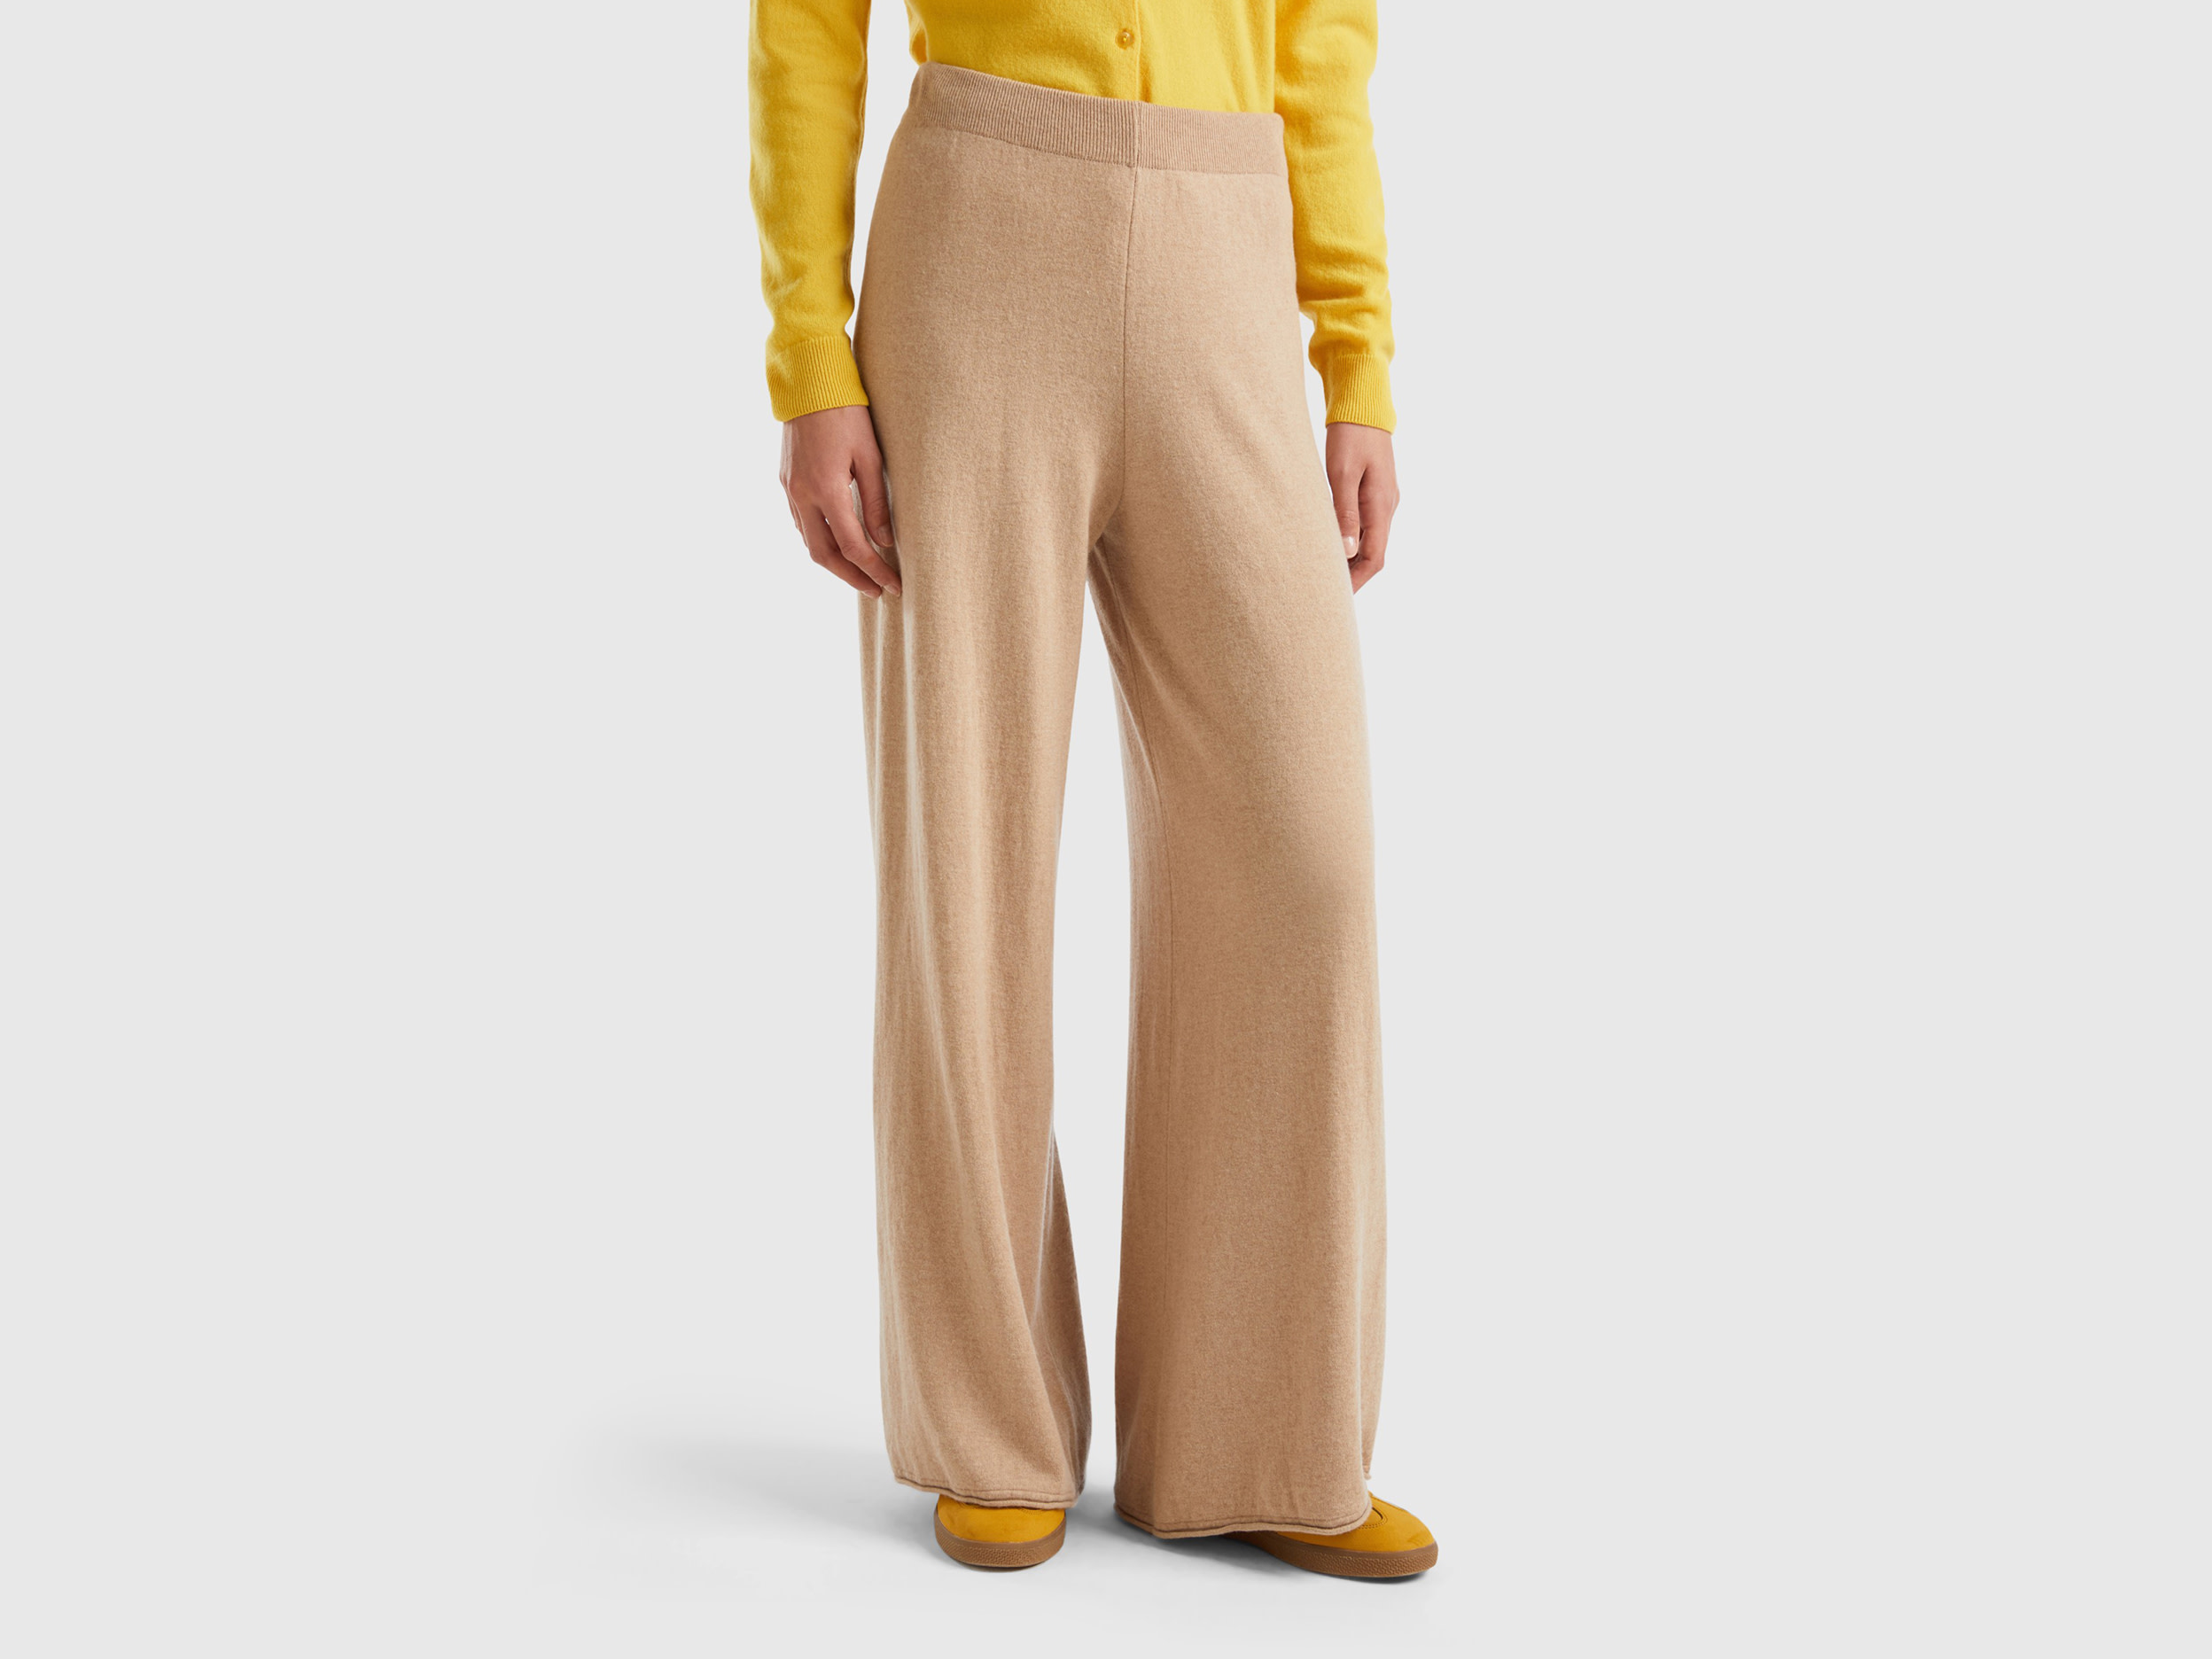 Benetton, Beige Wide Leg Trousers In Cashmere And Wool Blend, size XL, Beige, Women